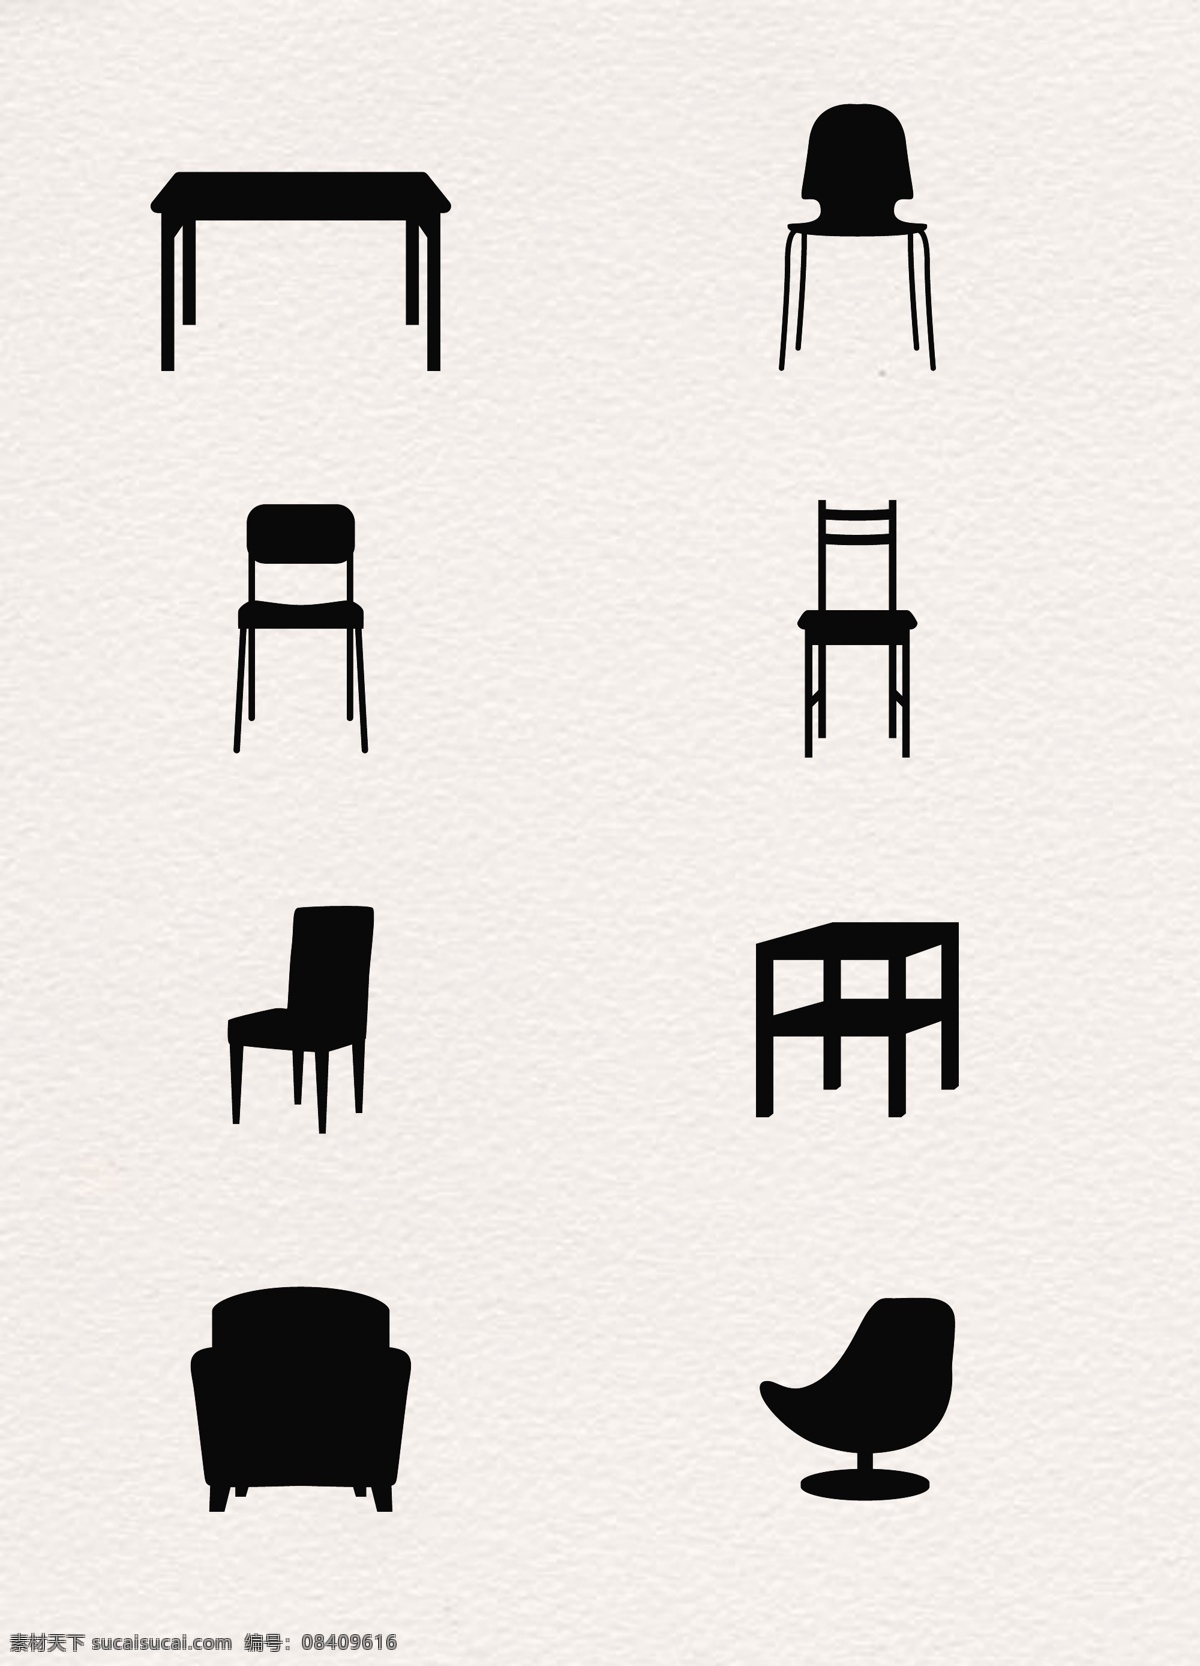 黑色 简约 家具 图标 元素 家居 矢量图 卡通 桌子 椅子 座椅